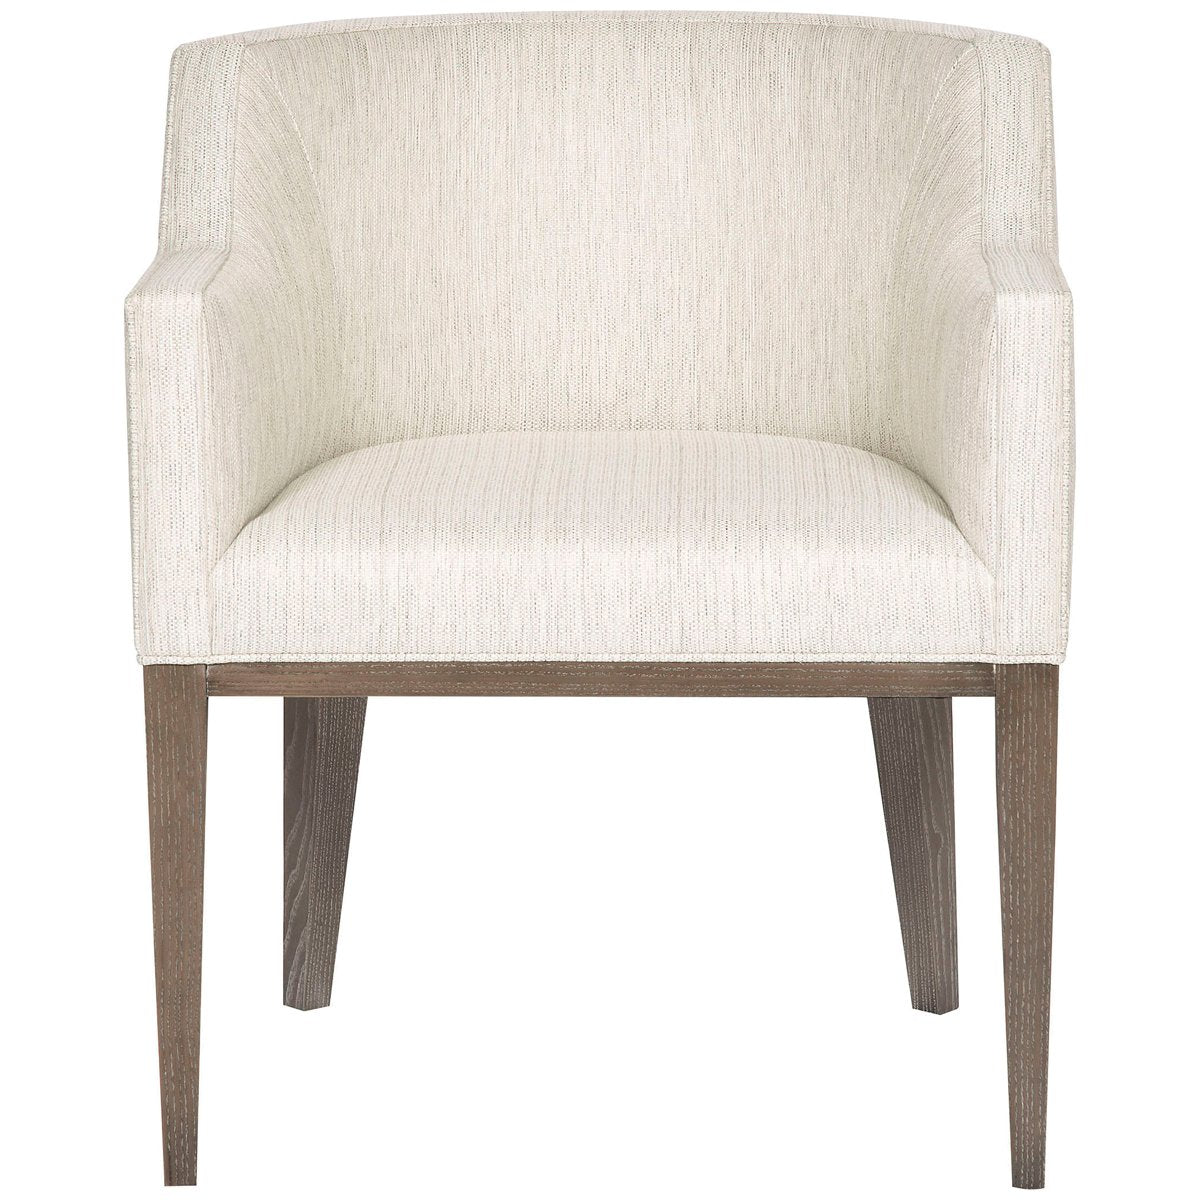 Vanguard Furniture Axis Arm Chair